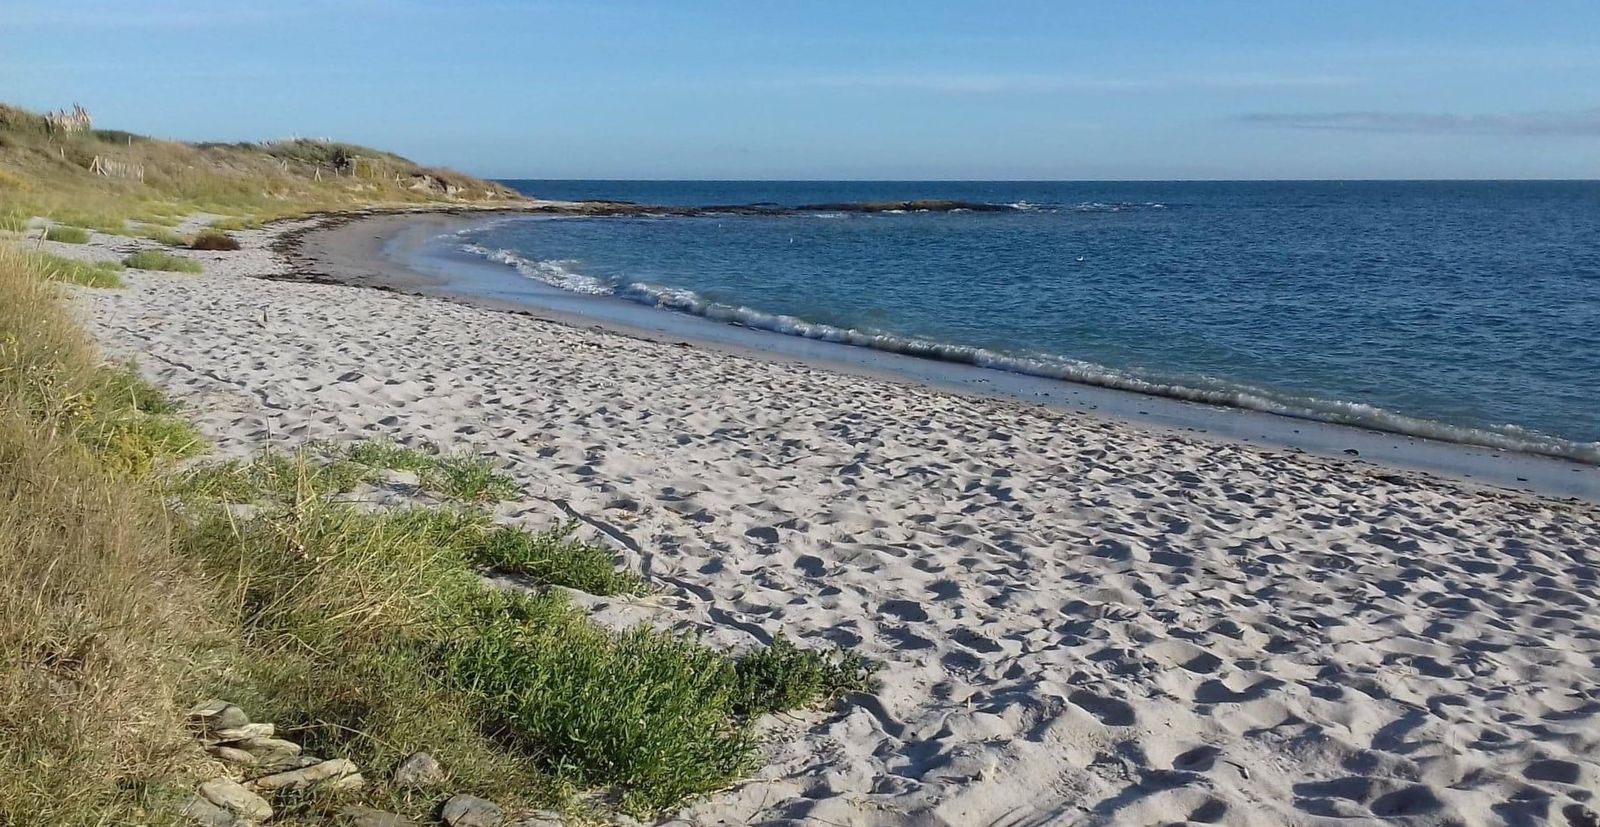 Comment mettre en place une gestion écologique de ses plages ?